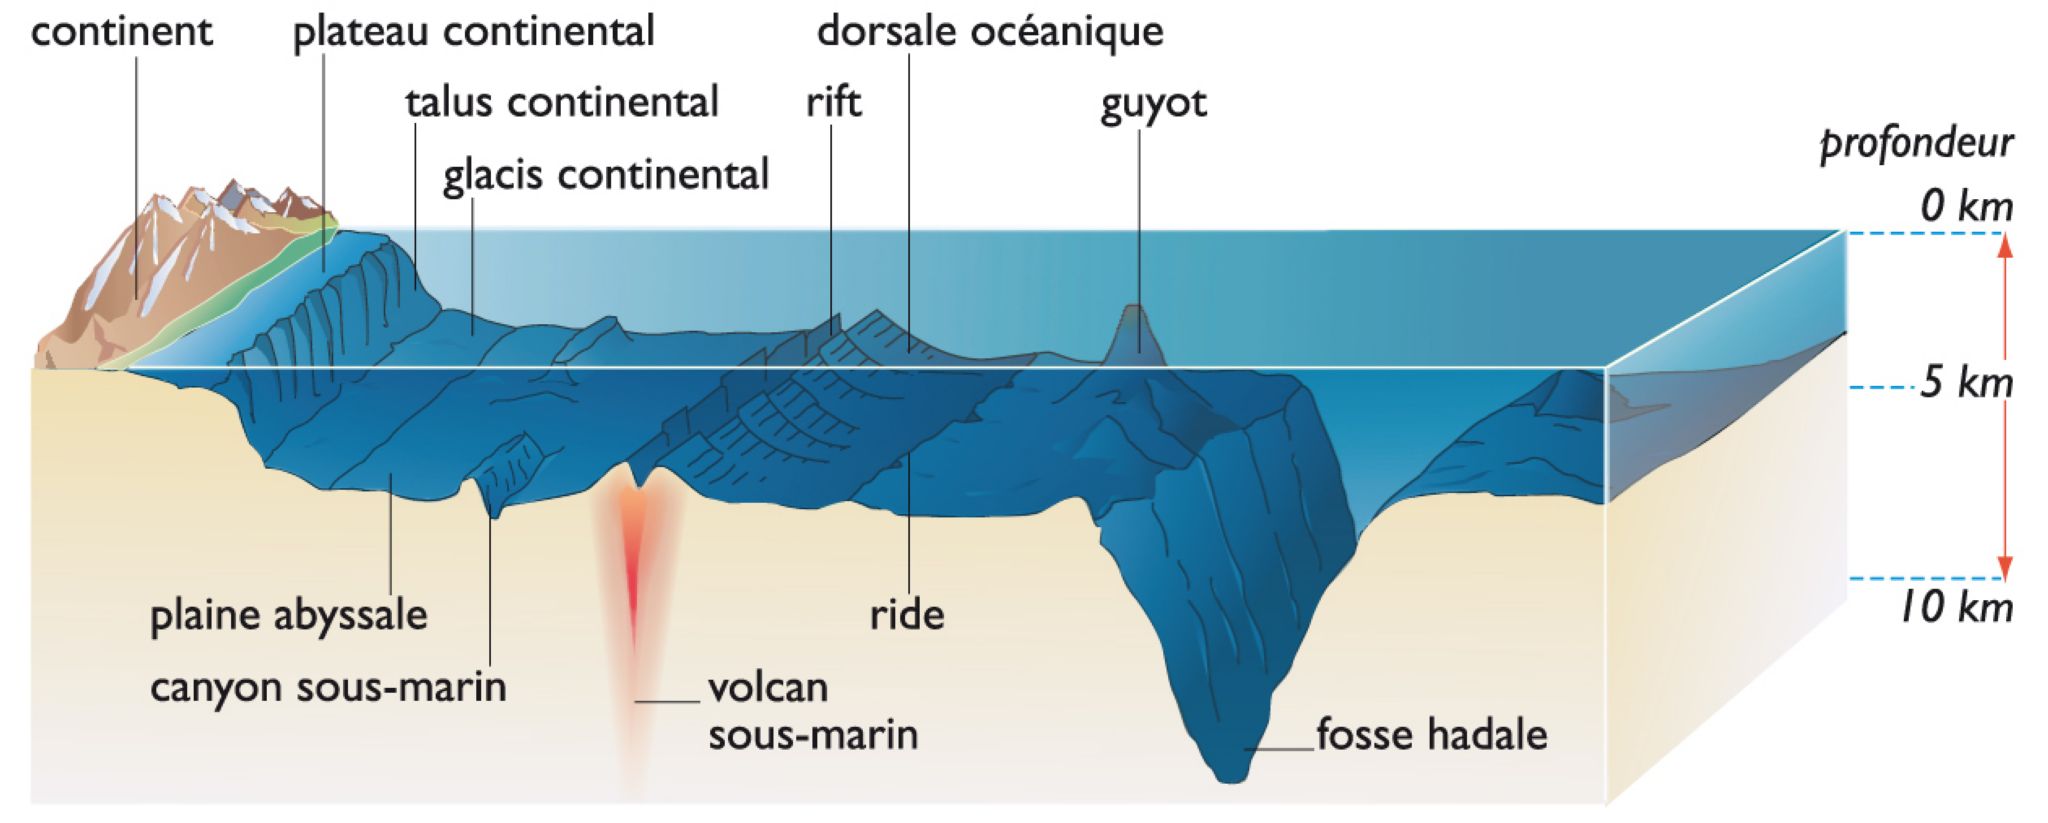 géomorphologie des fonds océaniques